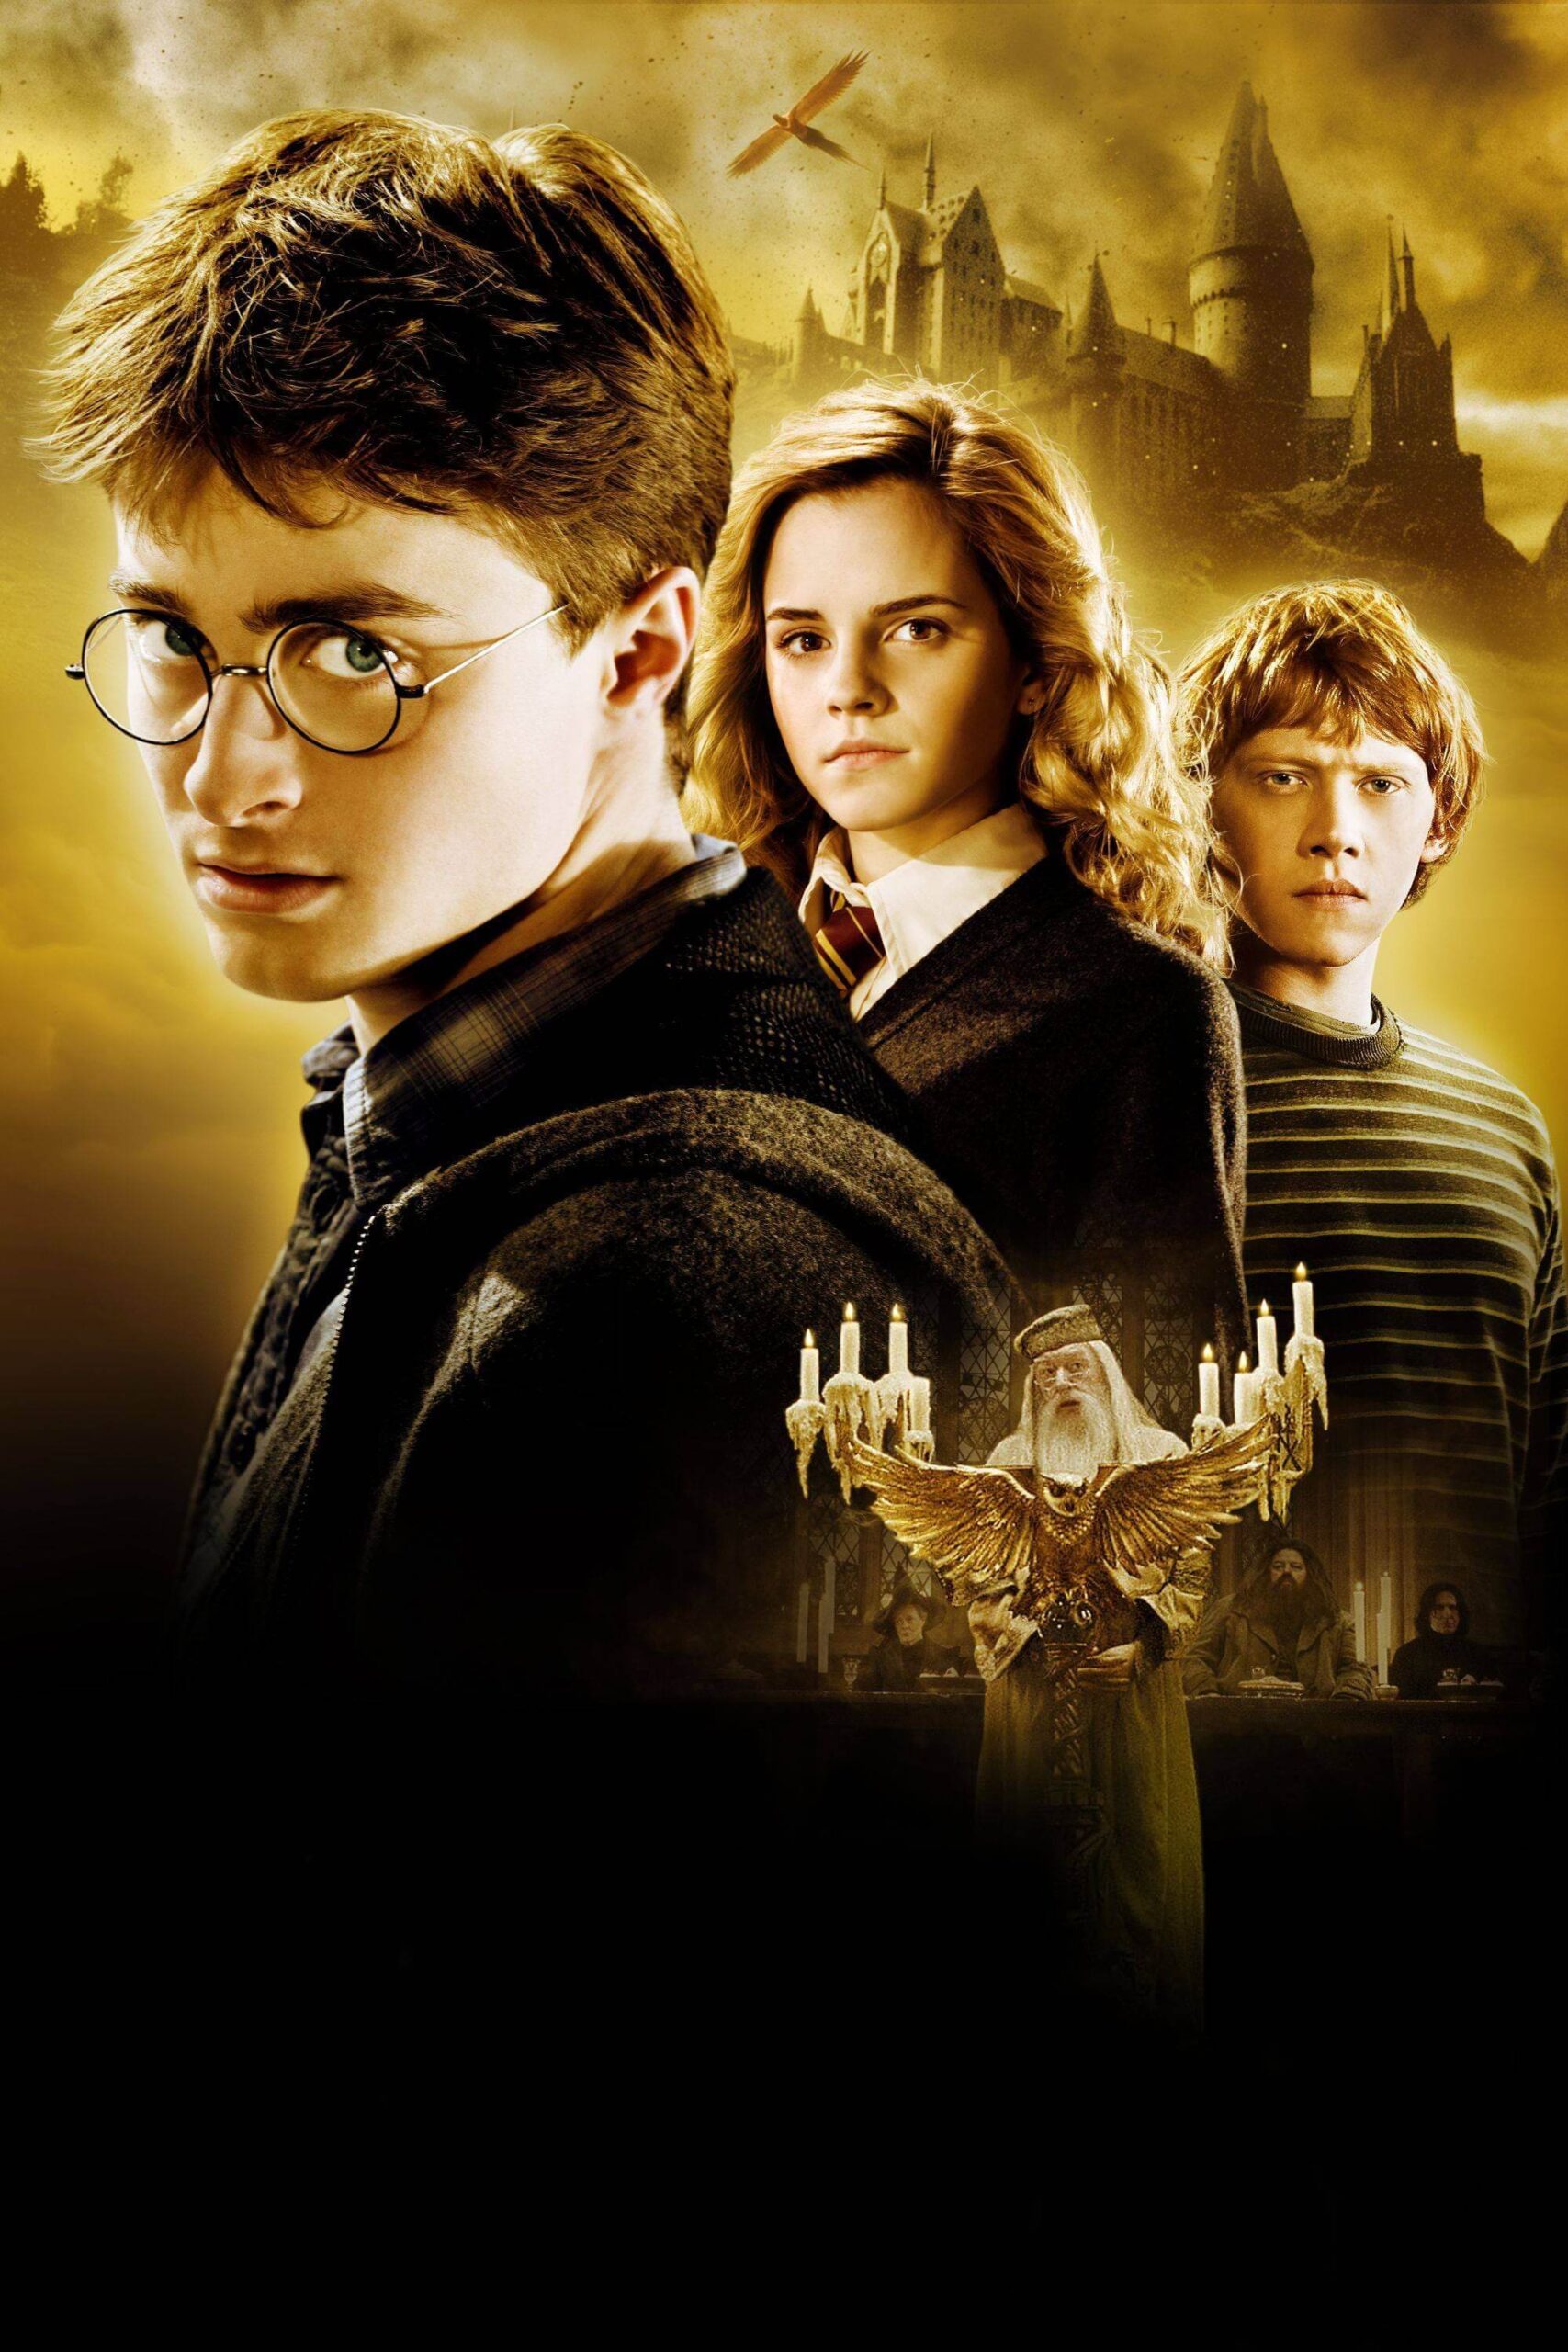 هری پاتر و شاهزاده دورگه (Harry Potter and the Half-Blood Prince)